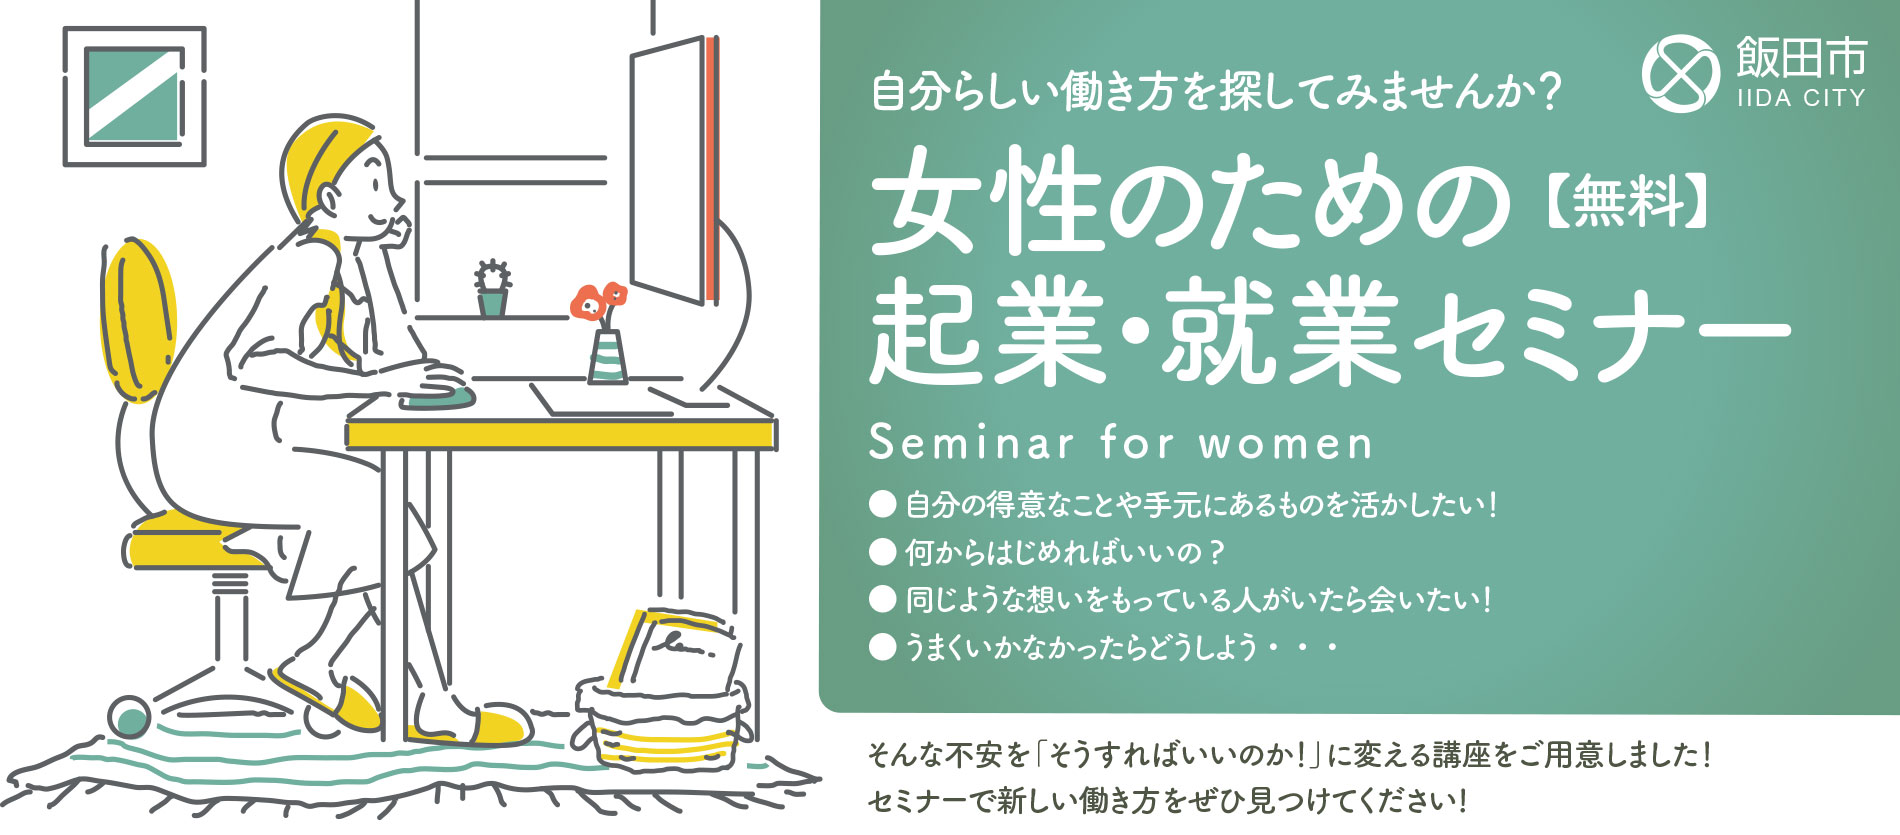 飯田市女性の起業就業セミナー